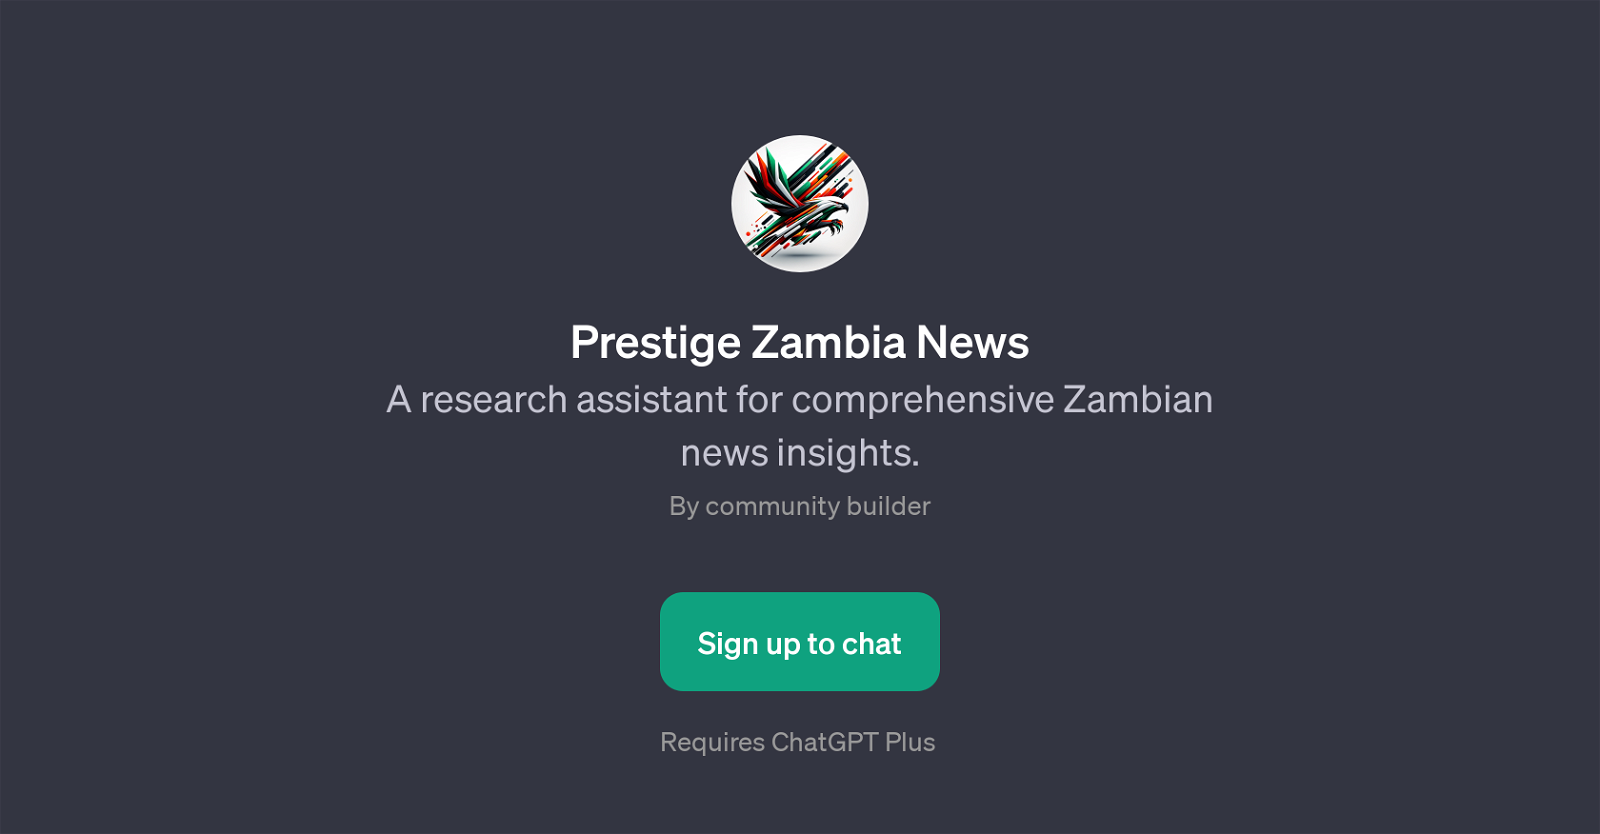 Prestige Zambia News website